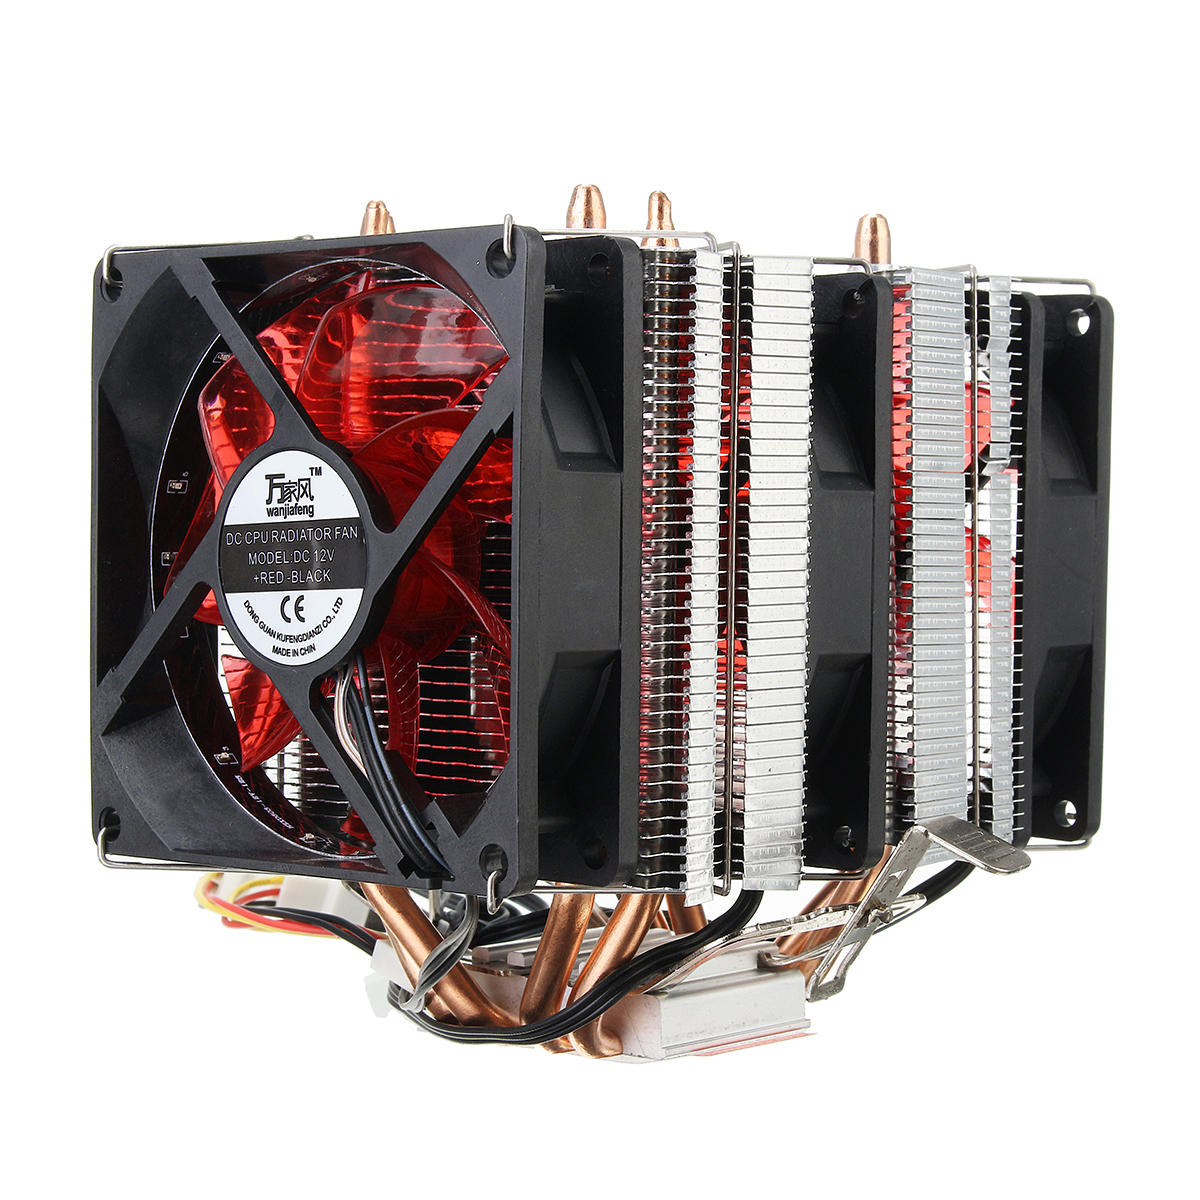 4 أنابيب الحرارة الأحمر ليد 3 وحدة المعالجة المركزية تبريد برودة مروحة المبرد ل أمد AM2 / 2 + AM3 Intel لغا 1156